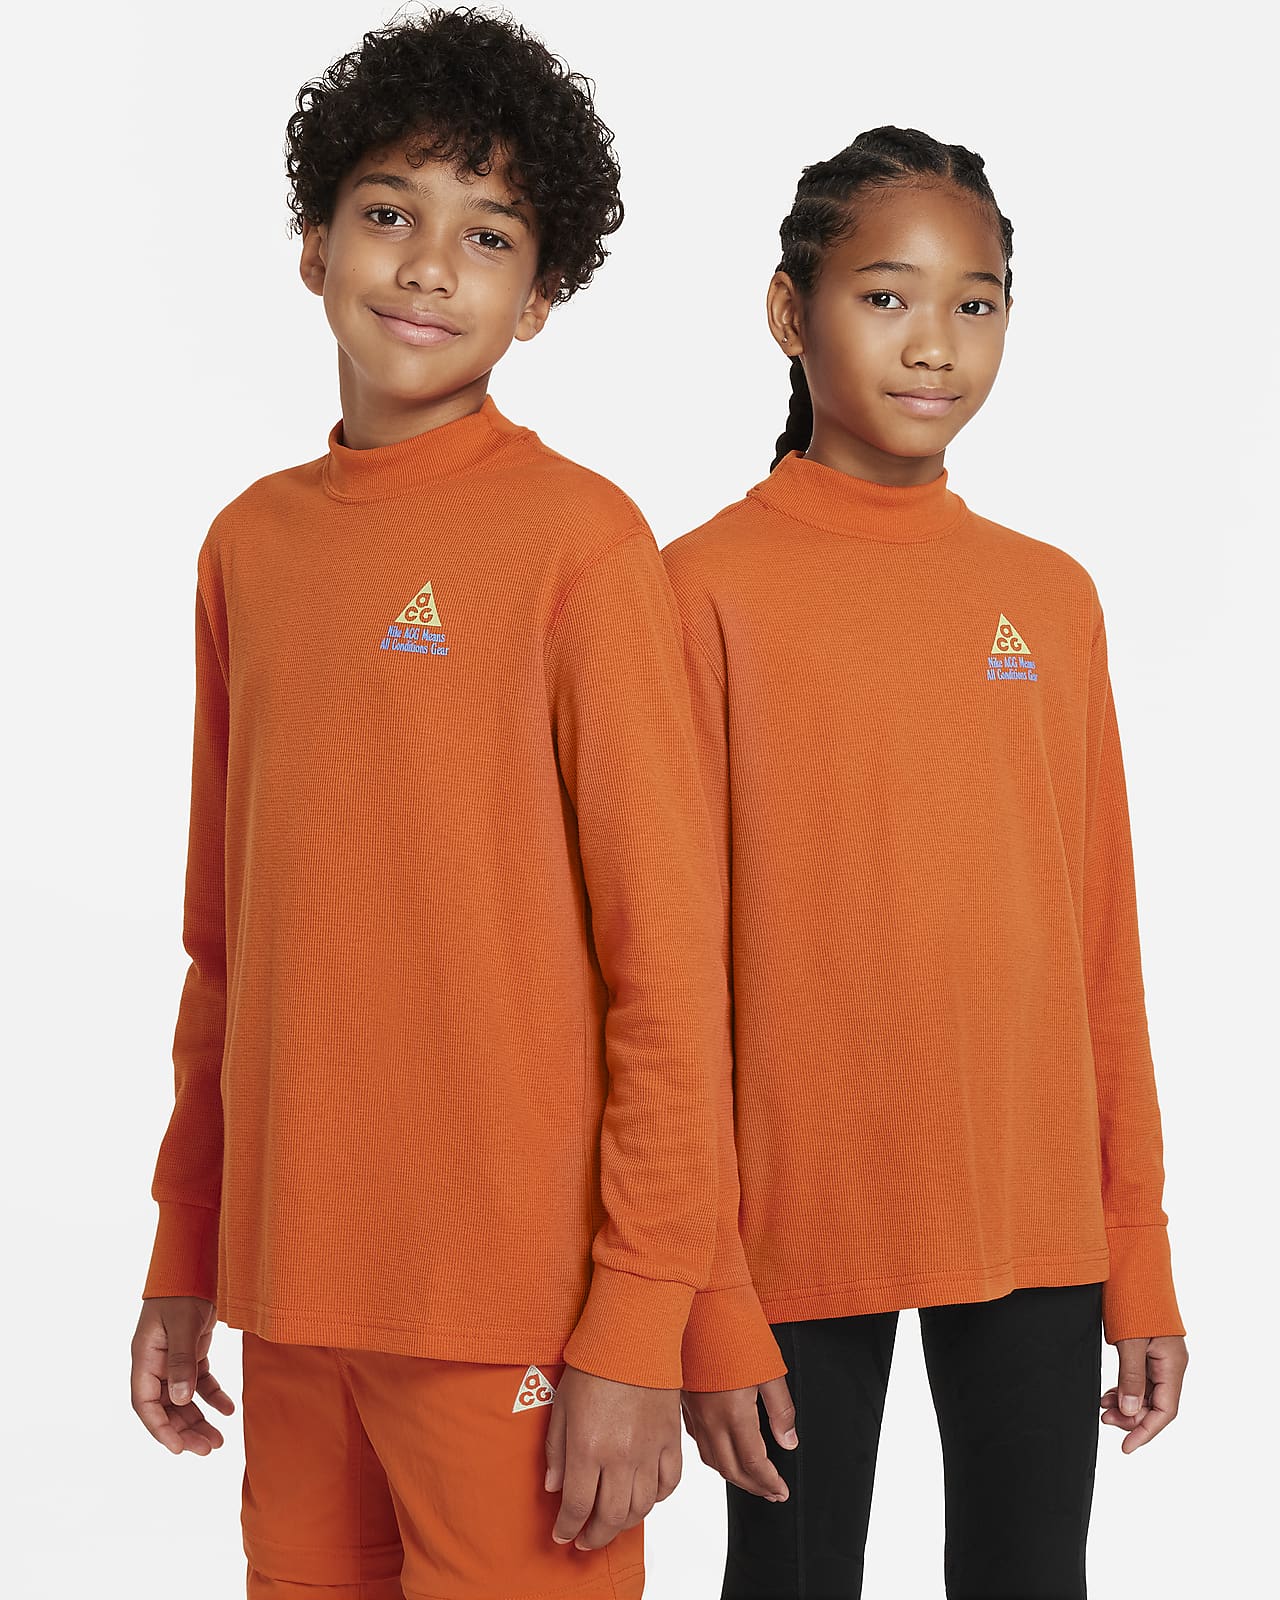 Volné tričko Nike ACG s dlouhým rukávem a vaflovou strukturou pro větší děti